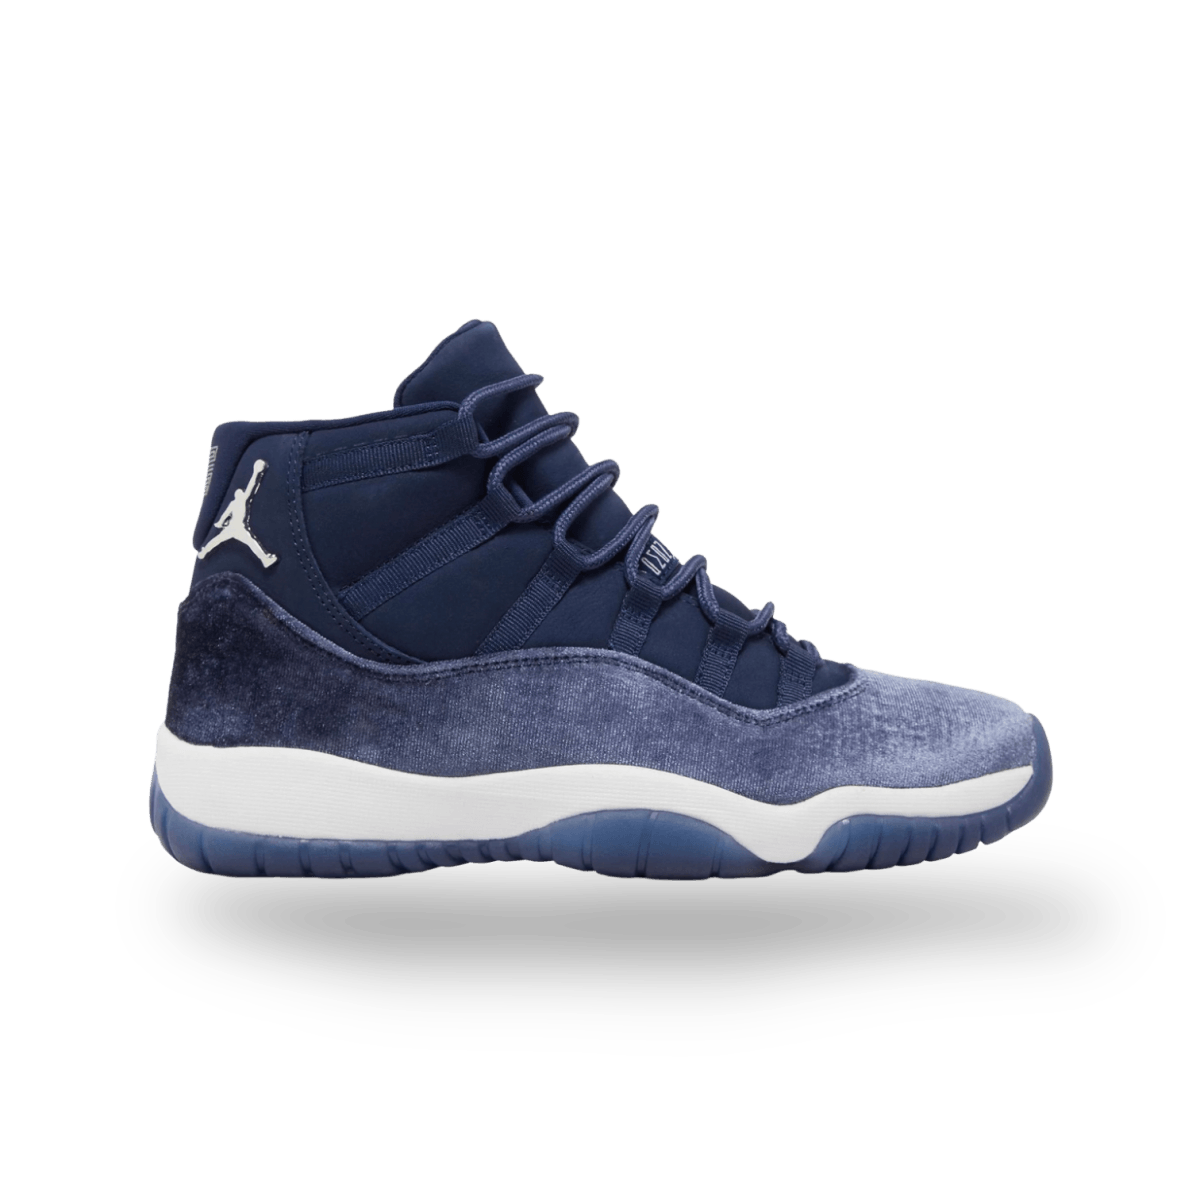 Air Jordan 11 Retro 'Navy Velvet' - High Sneaker - Jawns on Fire Sneakers & Streetwear